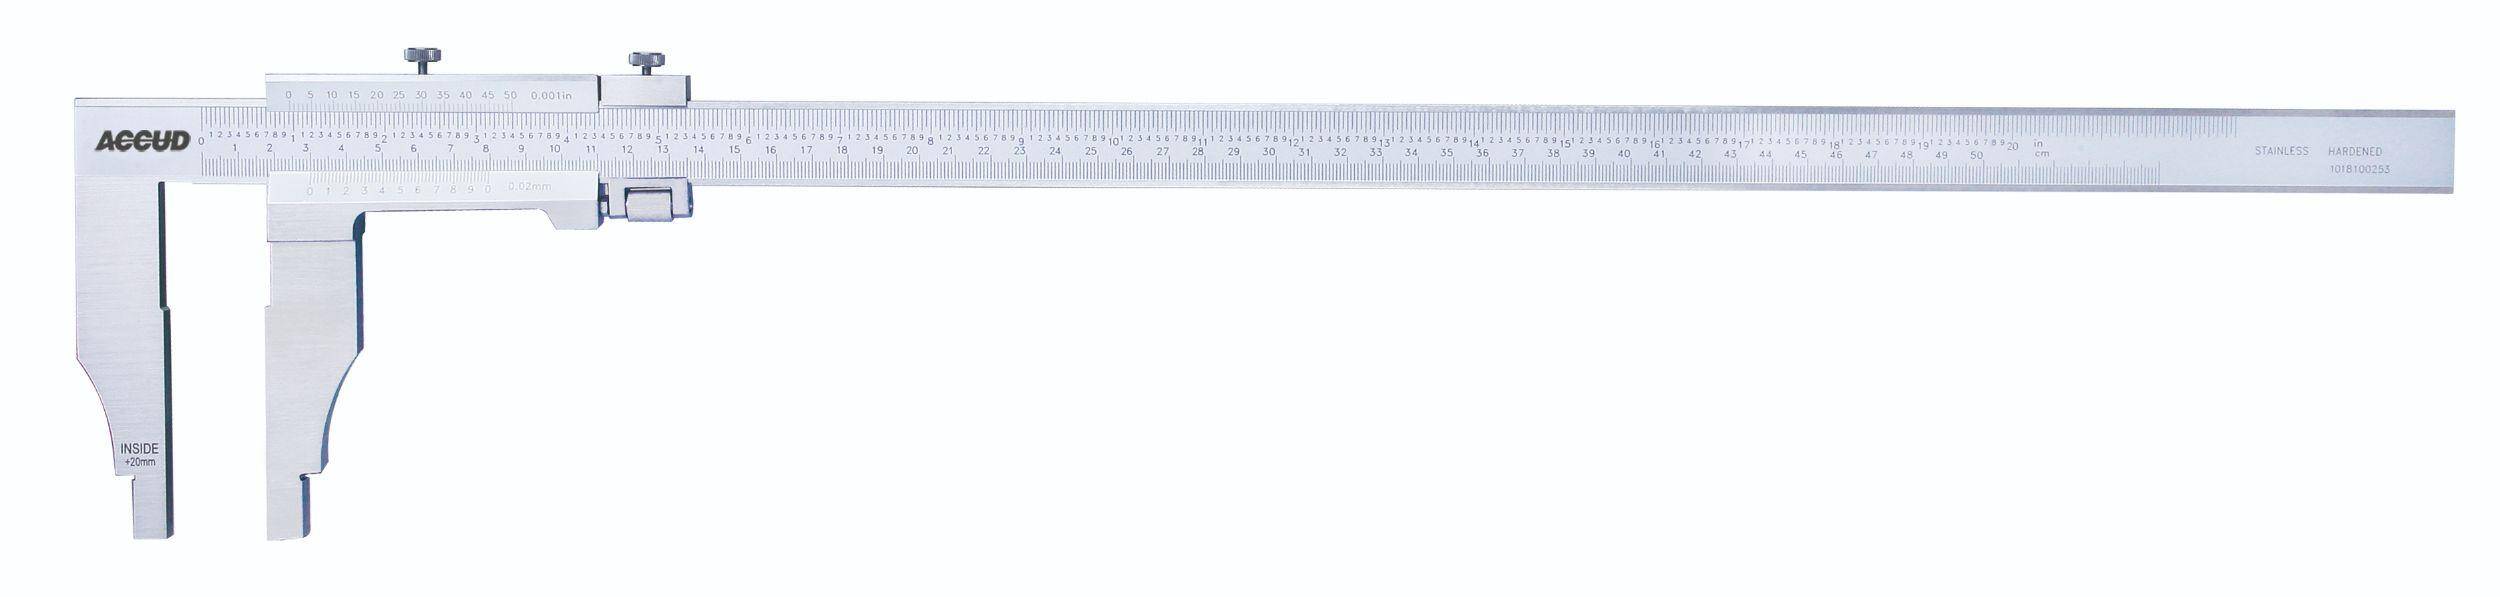 ACCUD suwmiarka analogowa 500/0.02 mm jednostronna długość szczęk 150 mm 128-020-22